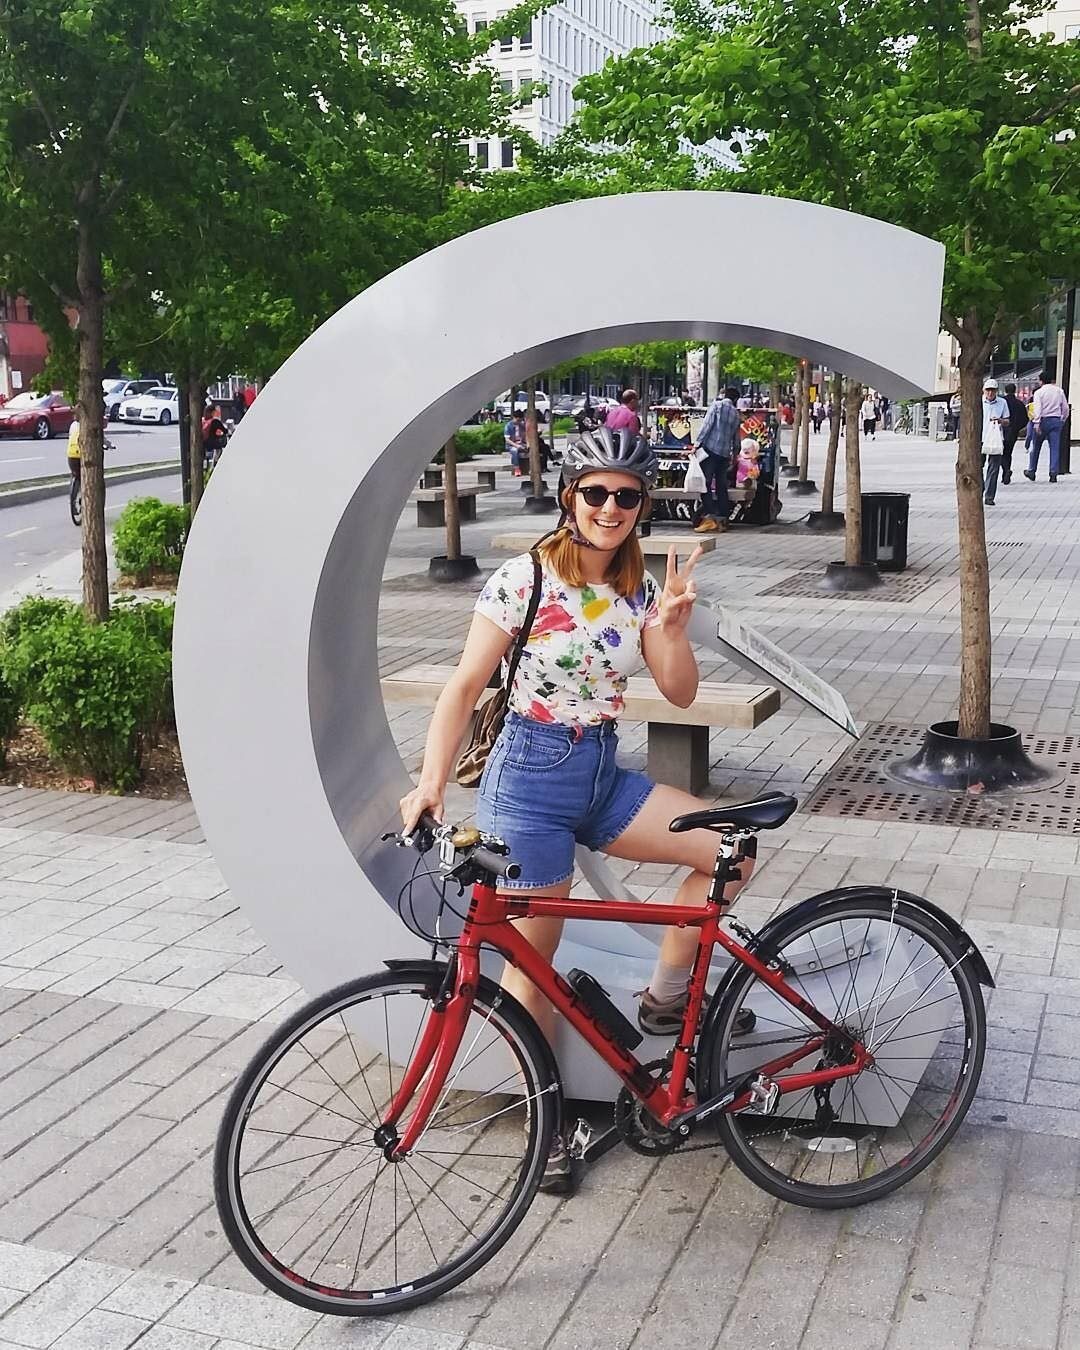 Tout sourire, une jeune cycliste pose devant un « C » sculpté, représentant le logo de Concordia